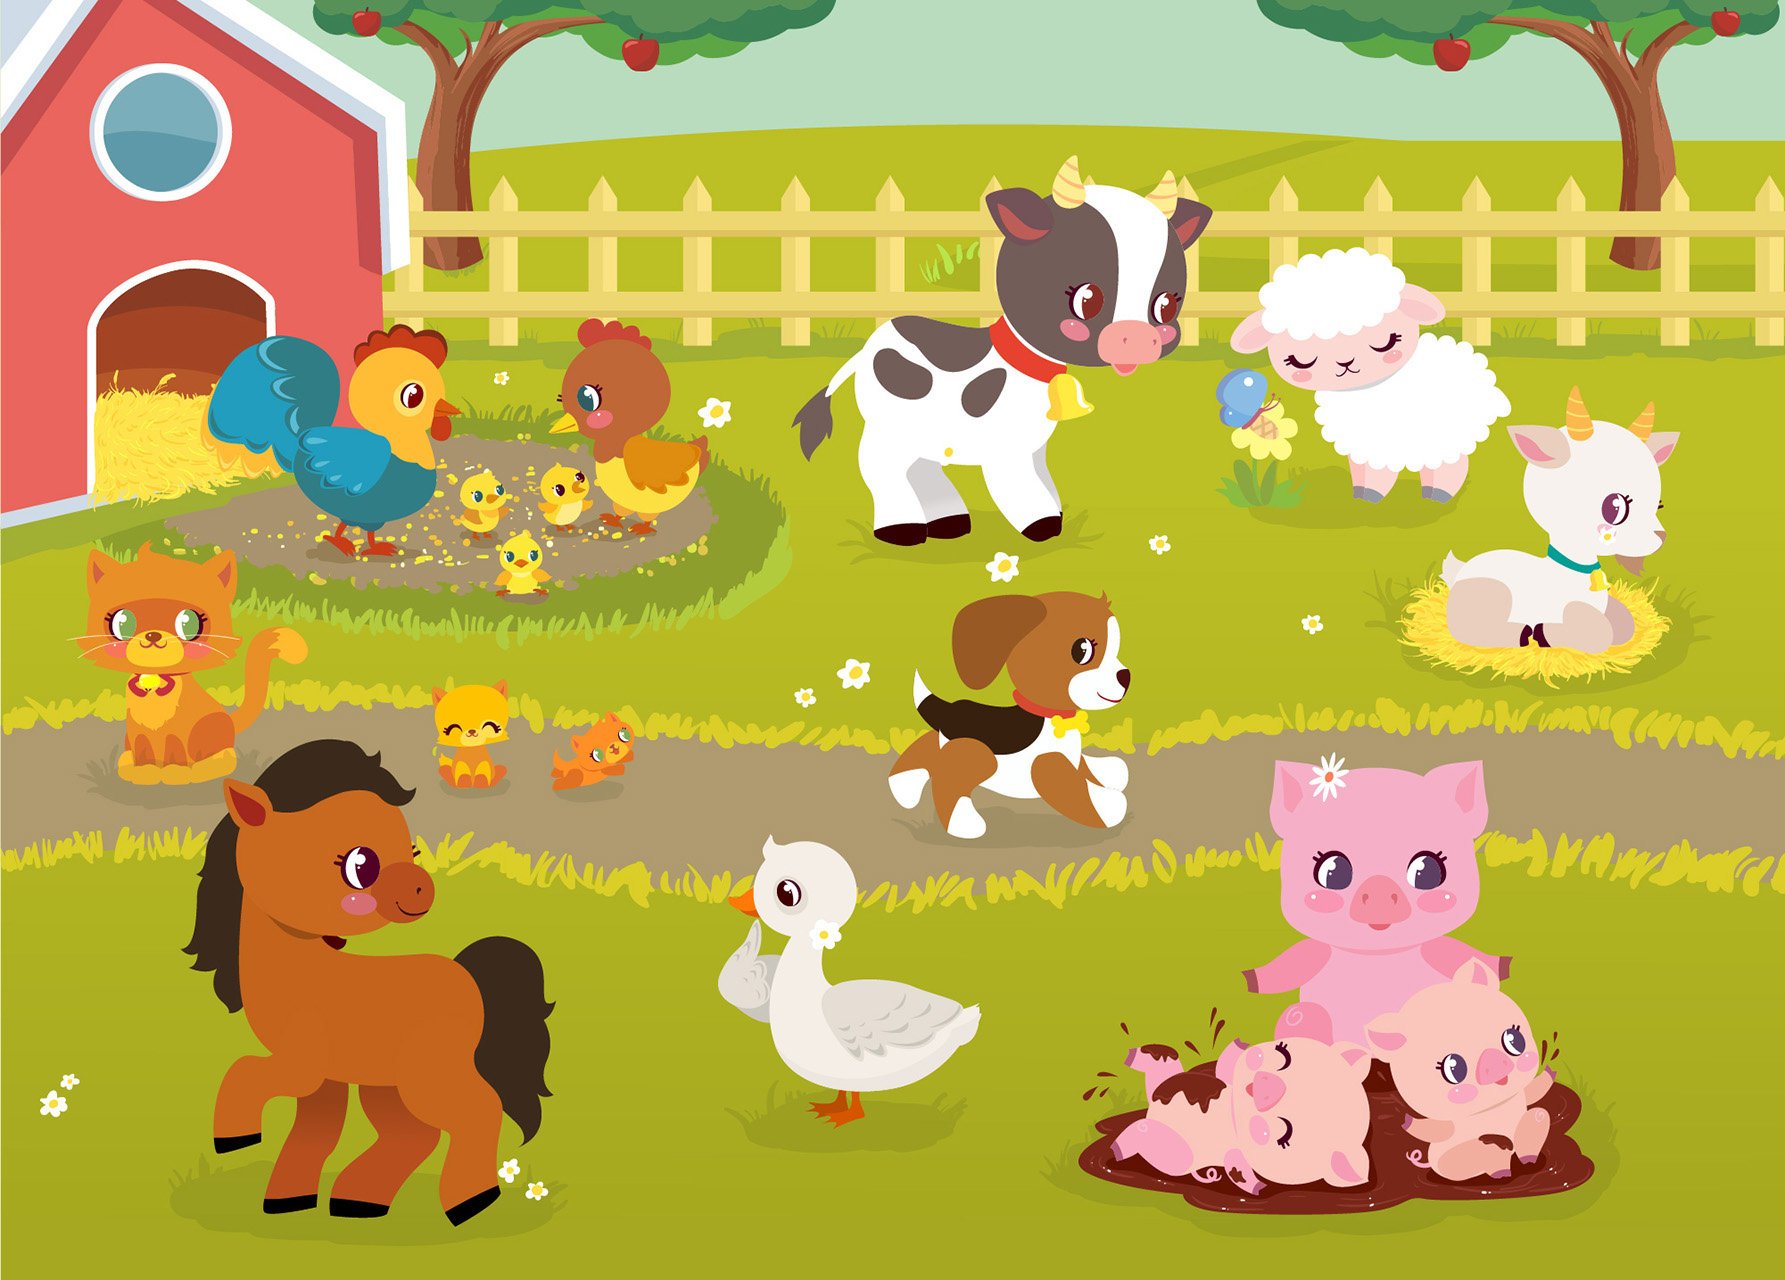 Лошади коровы и куры. Свиньи на ферме. Ферма фон для детей. Корова, свинья, курица на ферме. Изображения животных на ферме.